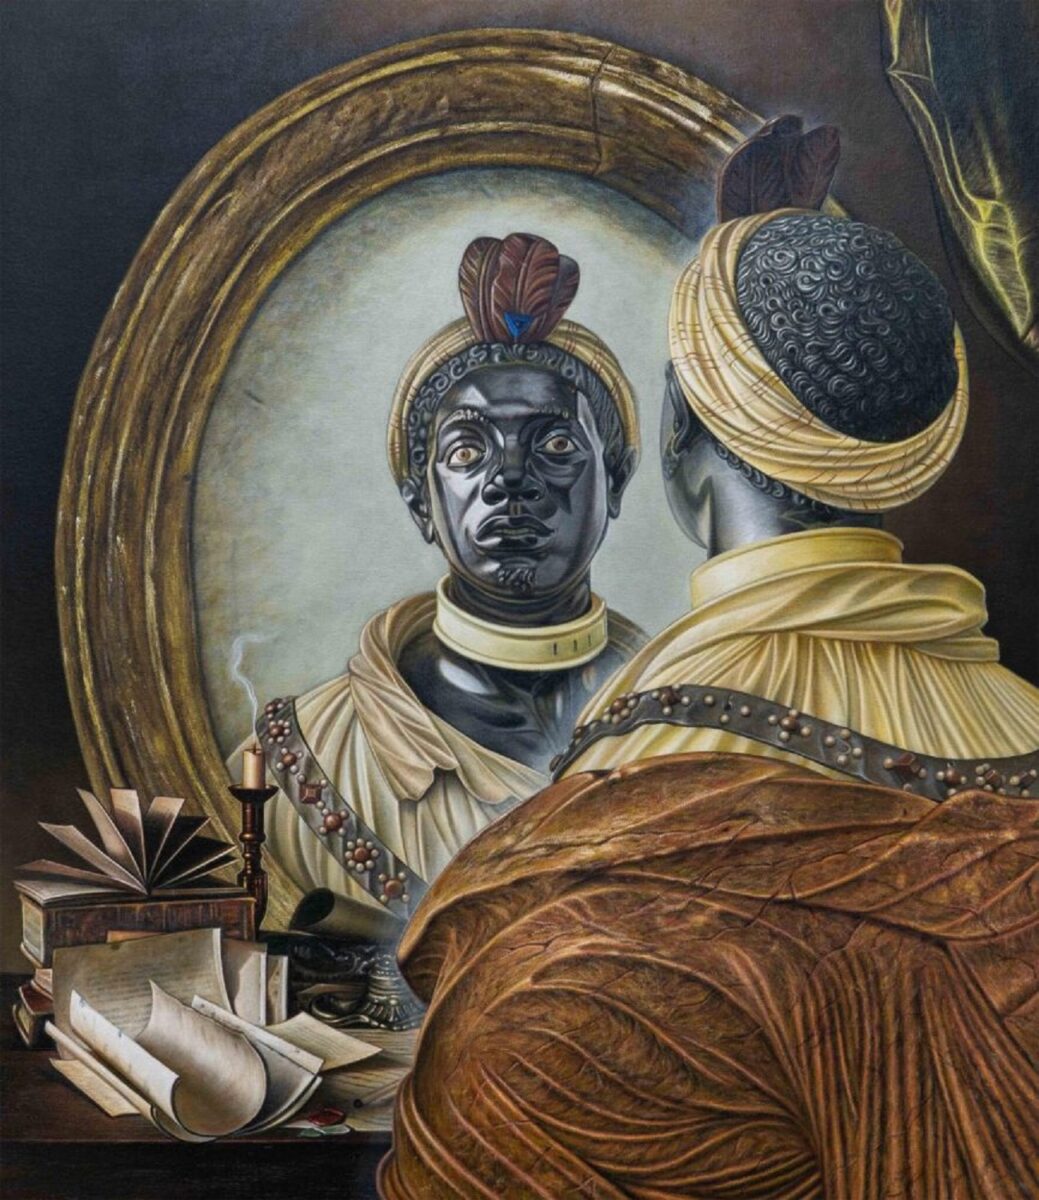 Kajahl artista americano subverte eurocentrismo racista com retratos incriveis de pessoas negras 5